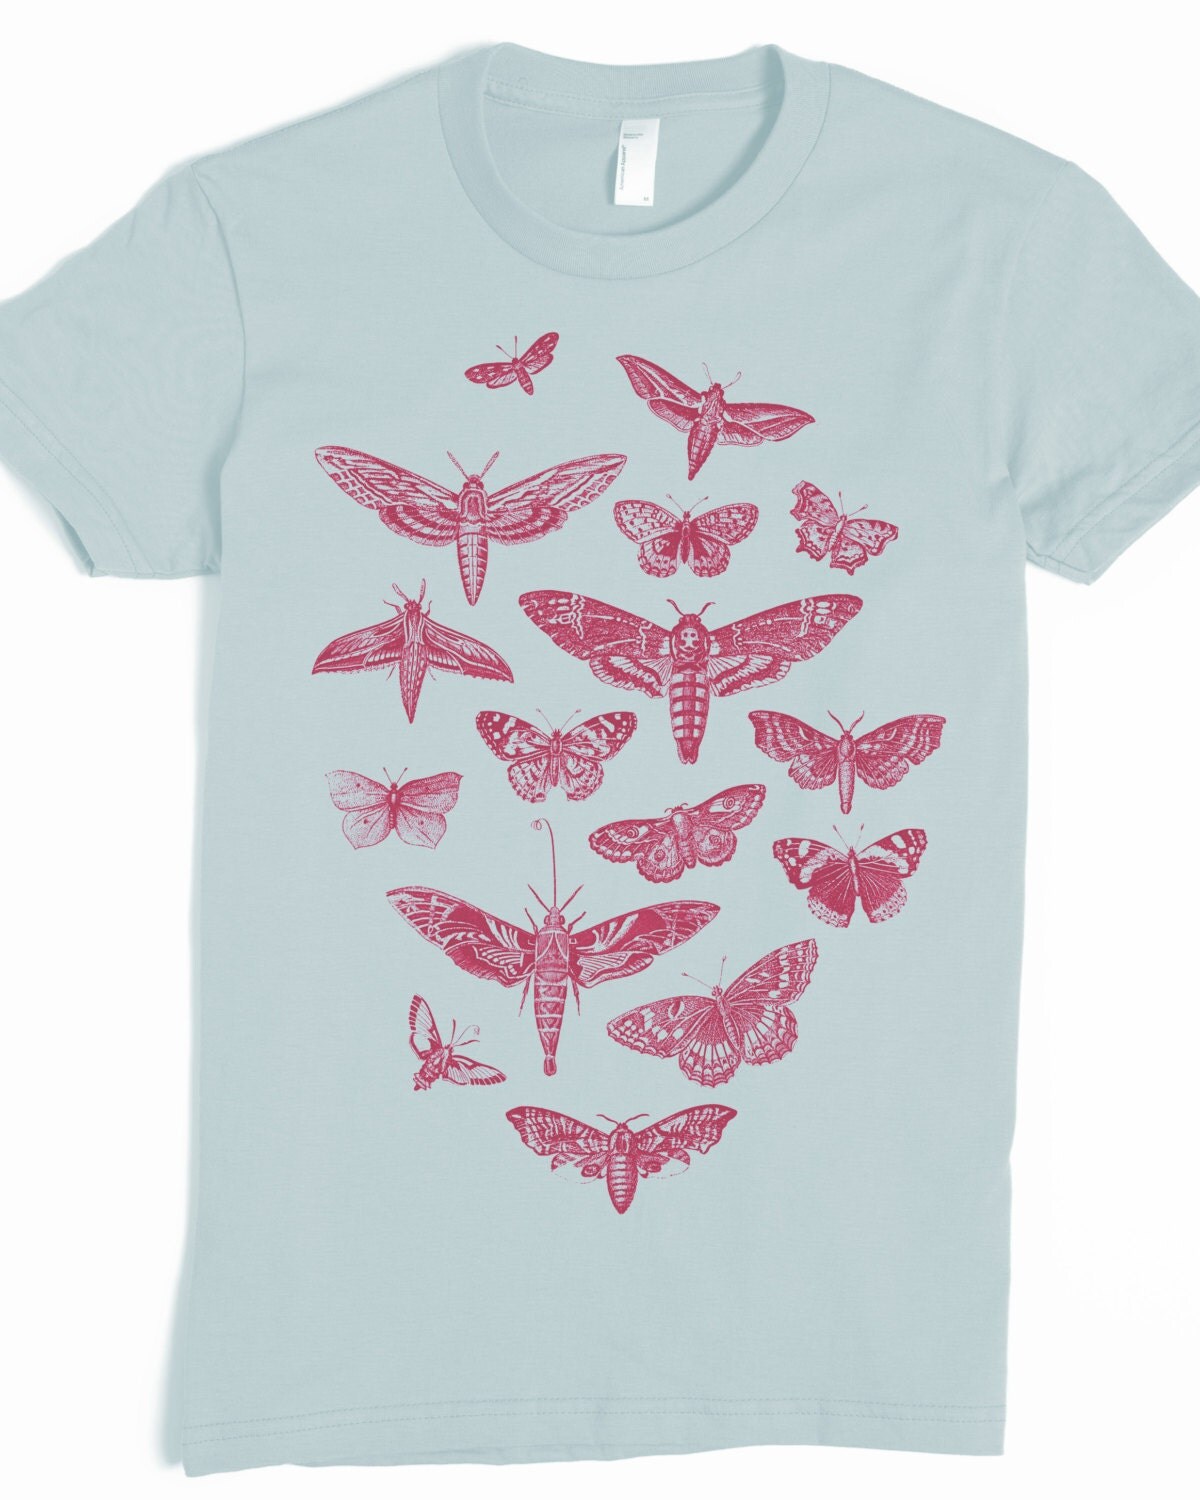 Moth Shirt Women's Butterfly T-shirt Vintage